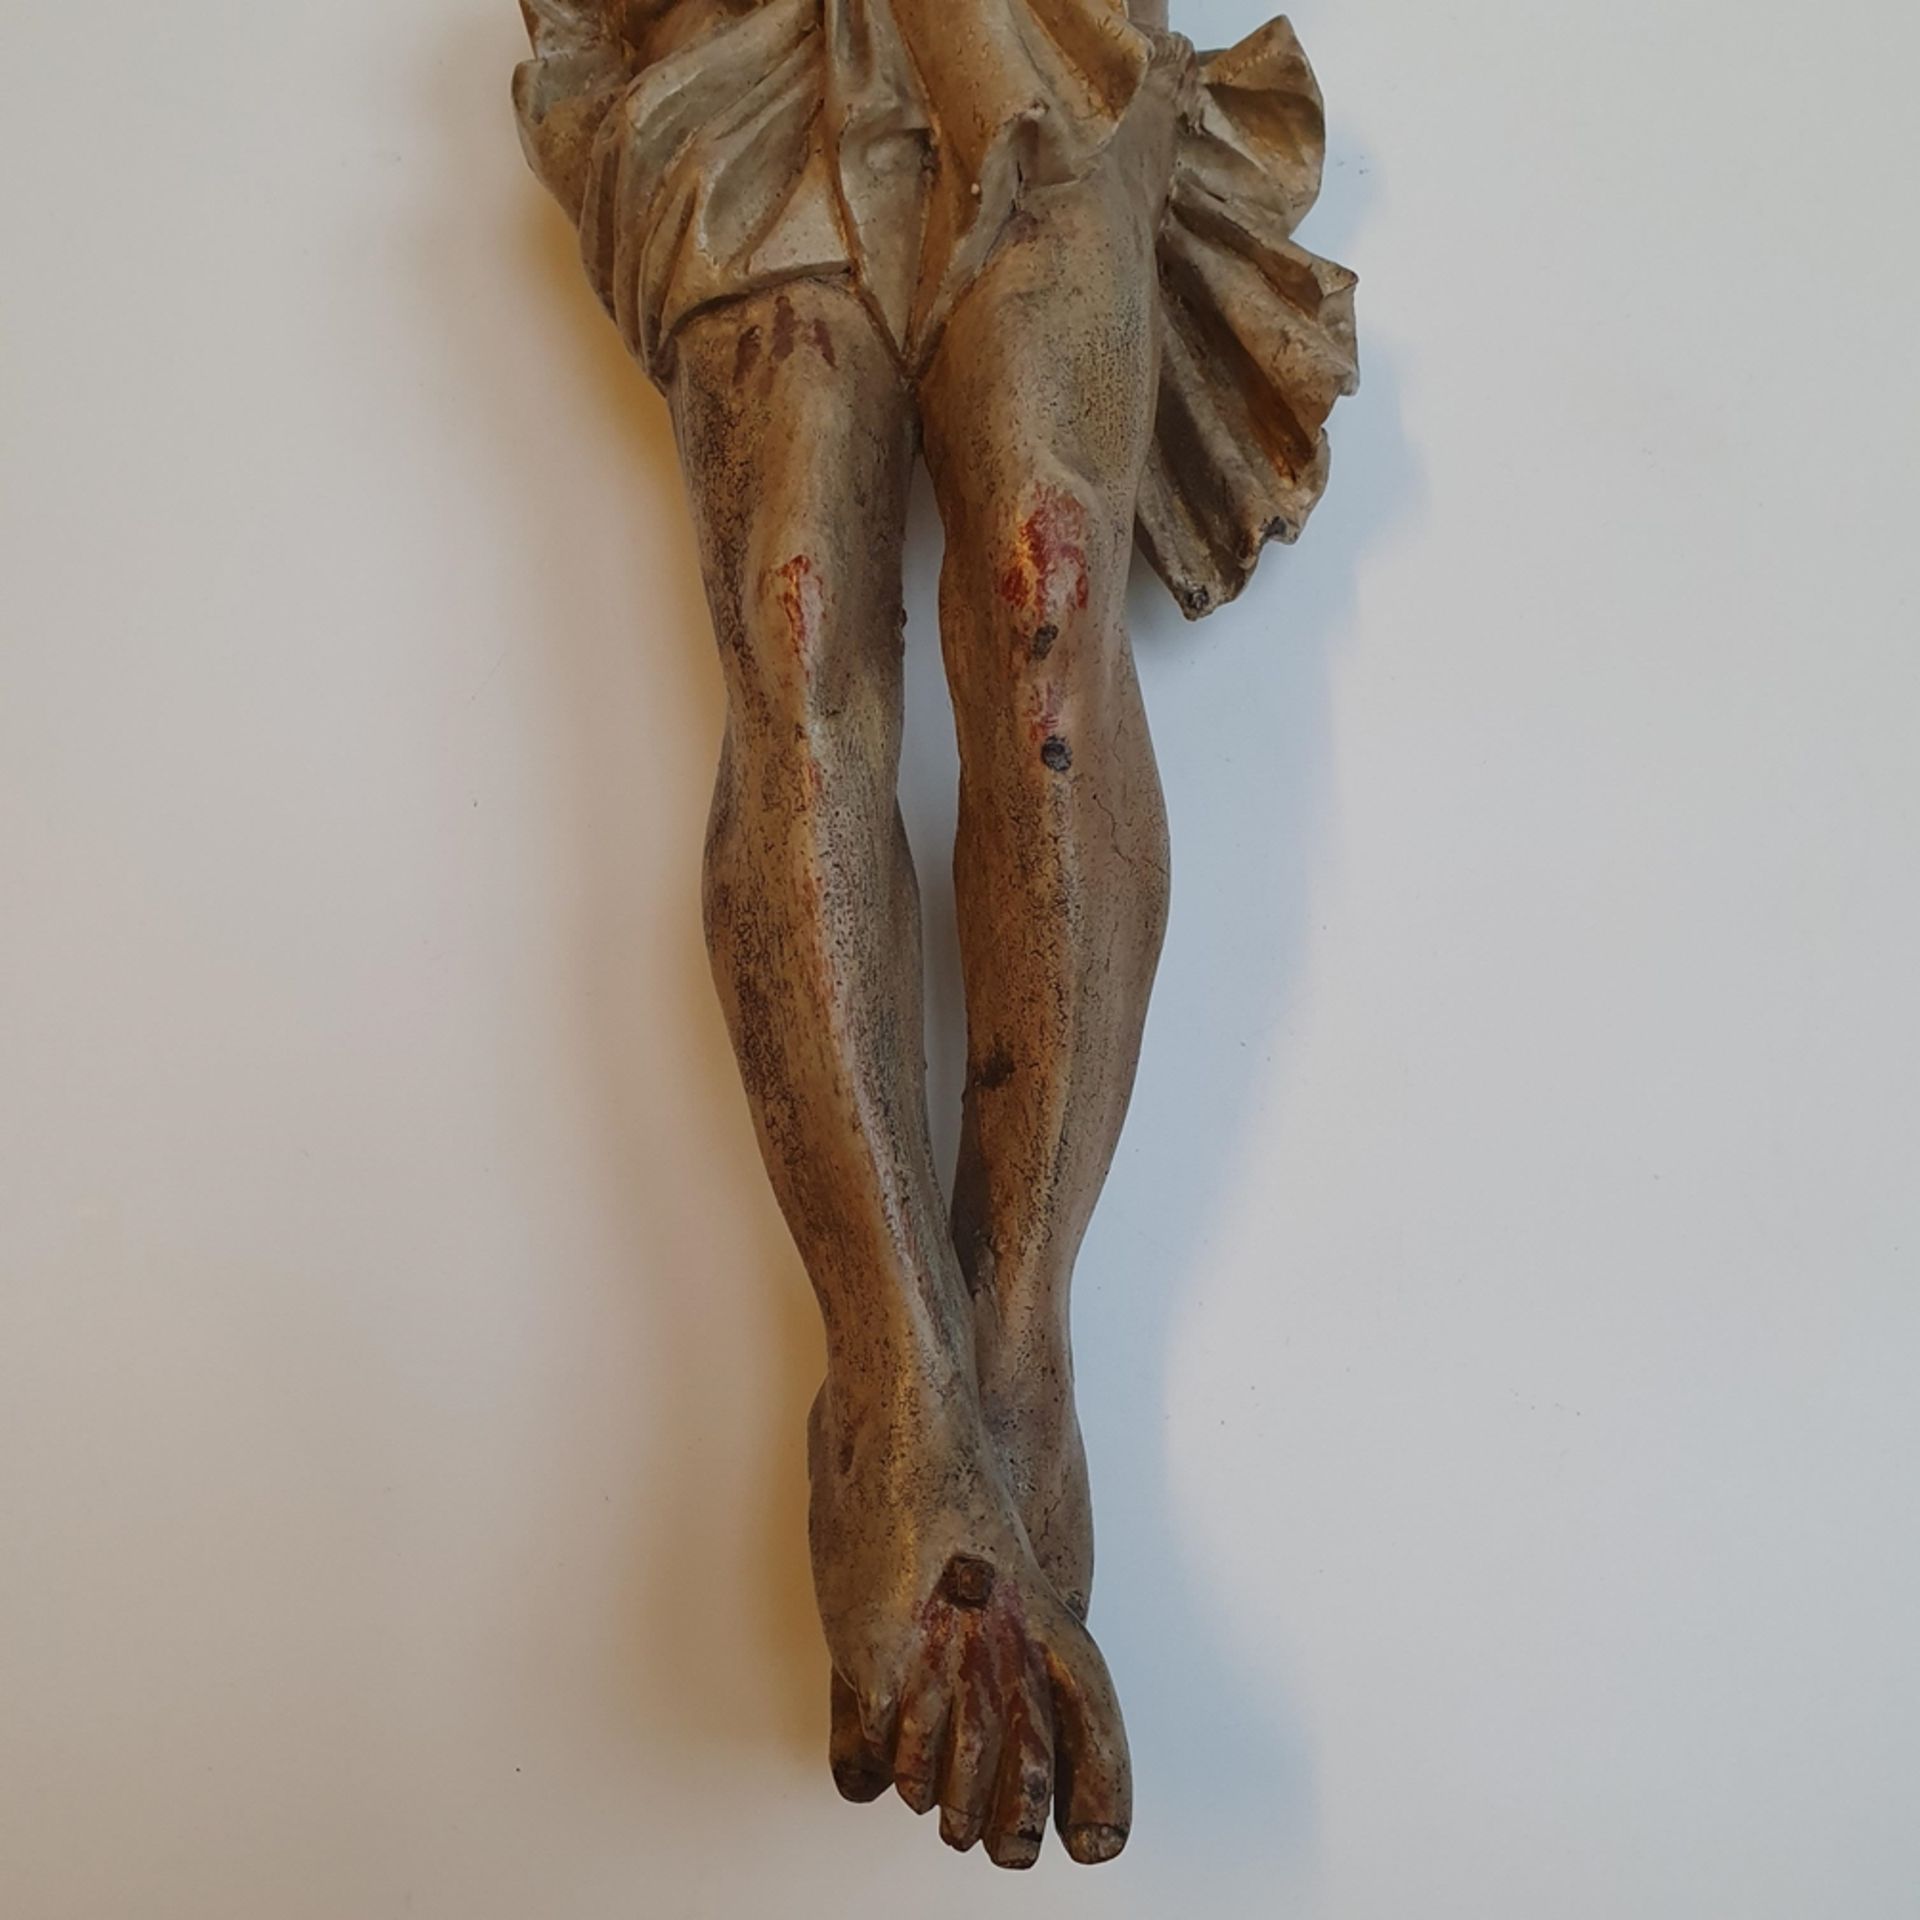 Kruzifix - 19. Jh. oder früher, Holz, vollrund geschnitzt, farbig gefasst, Dars - Image 7 of 13